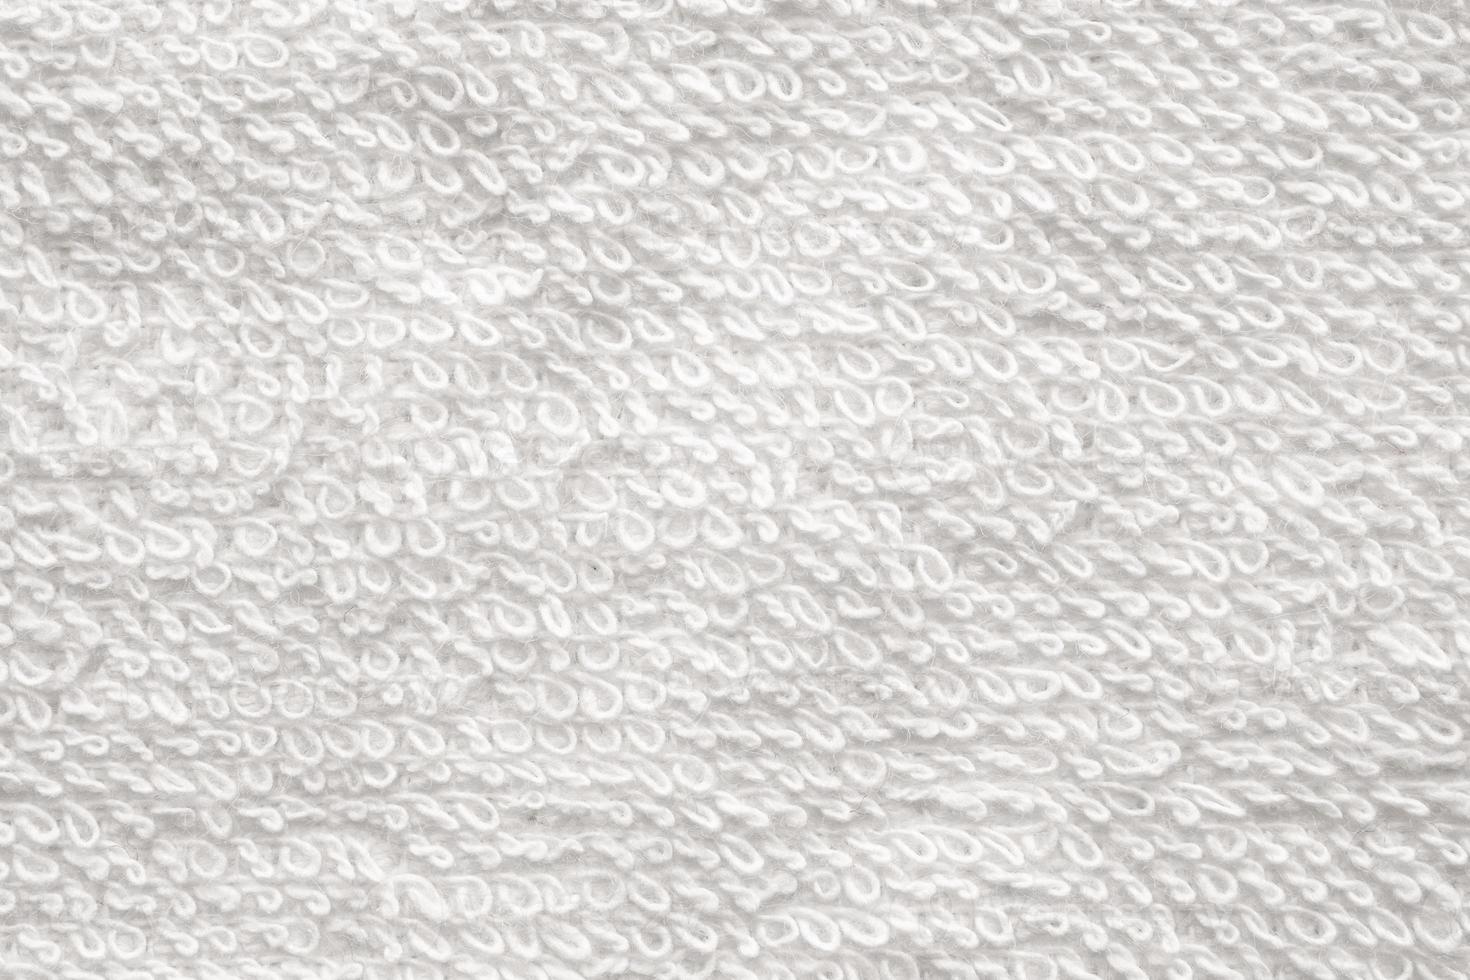 Serviette de coton blanc gros plan texture abstract background photo